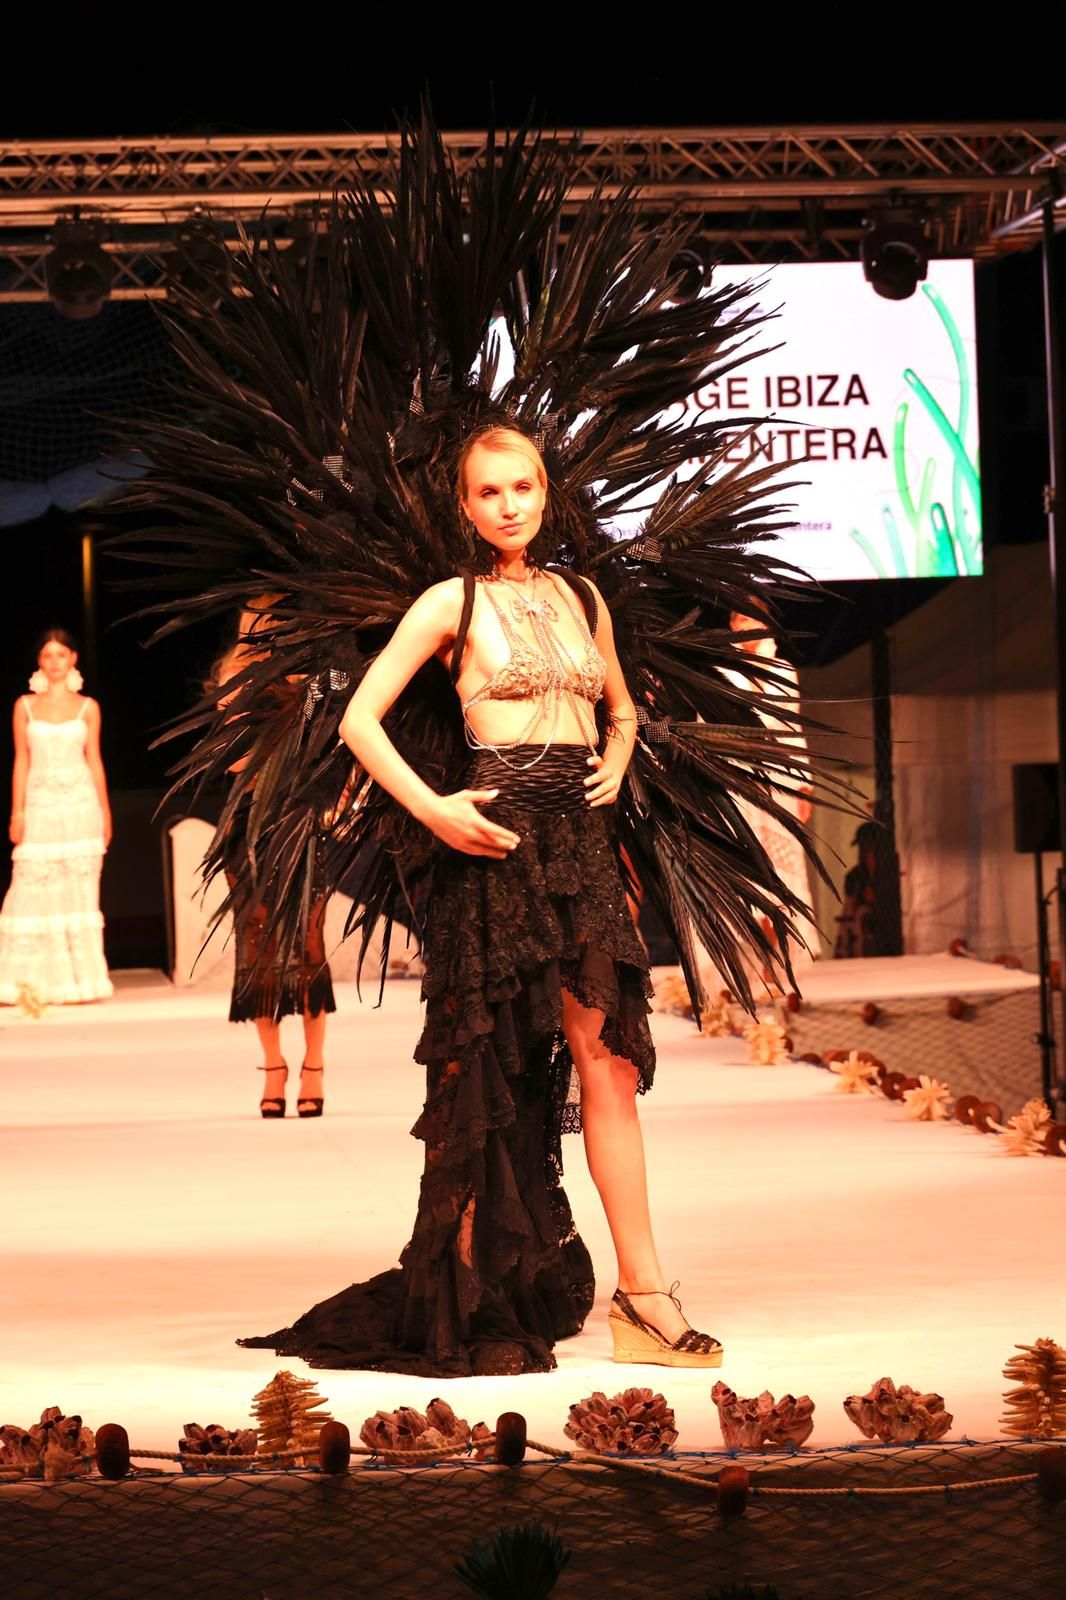 Las imágenes de la IV edición de la pasarela de moda de Formentera